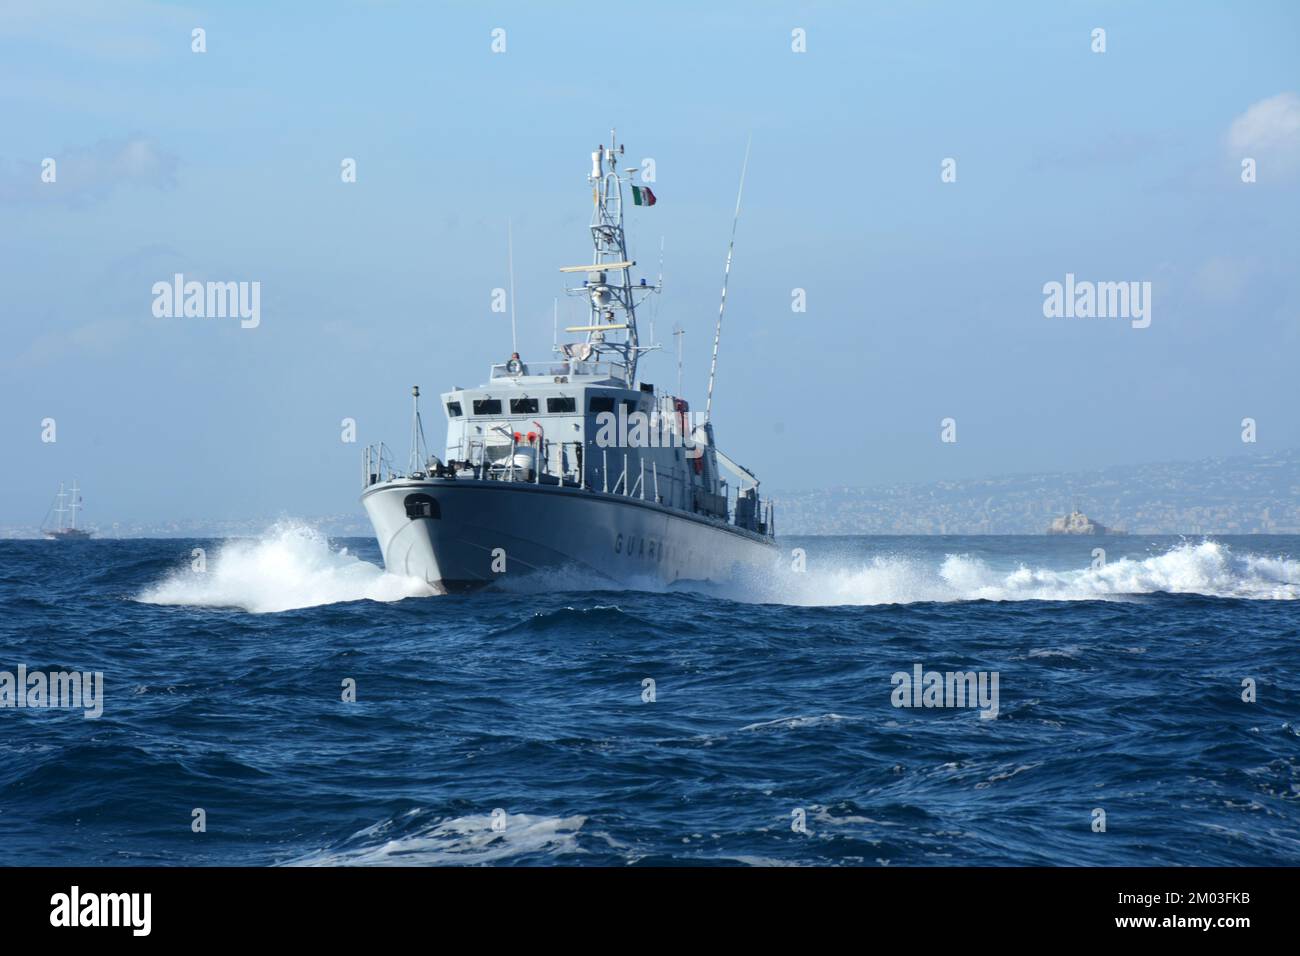 Und die italienische Küstenwache (Guardia Costiera) patrouilliert die Mittelmeergewässer der Amalfiküste, nahe Sorrent, Kampanien, Italien. Stockfoto